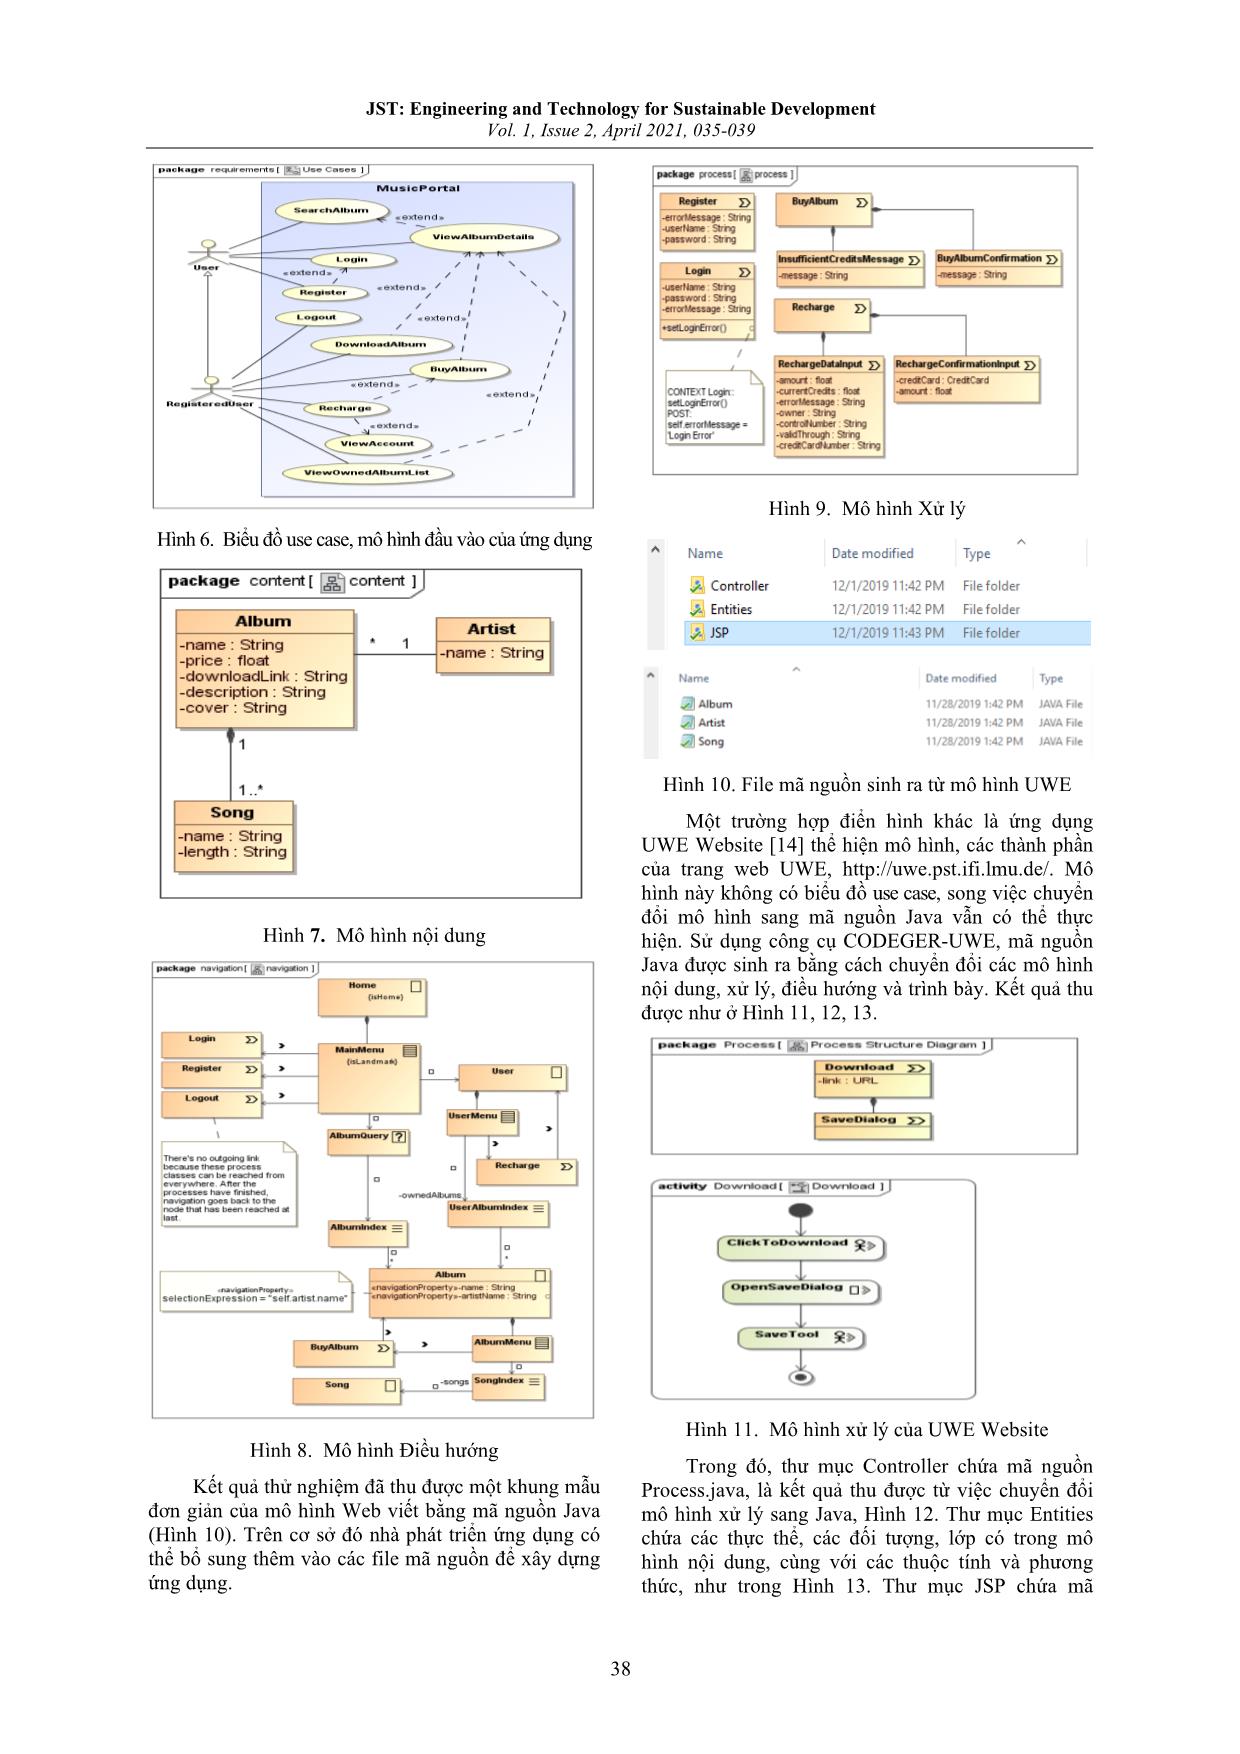 Xây dựng và thử nghiệm công cụ Codeger-Uwe phát triển ứng dụng Web hướng mô hình trang 4